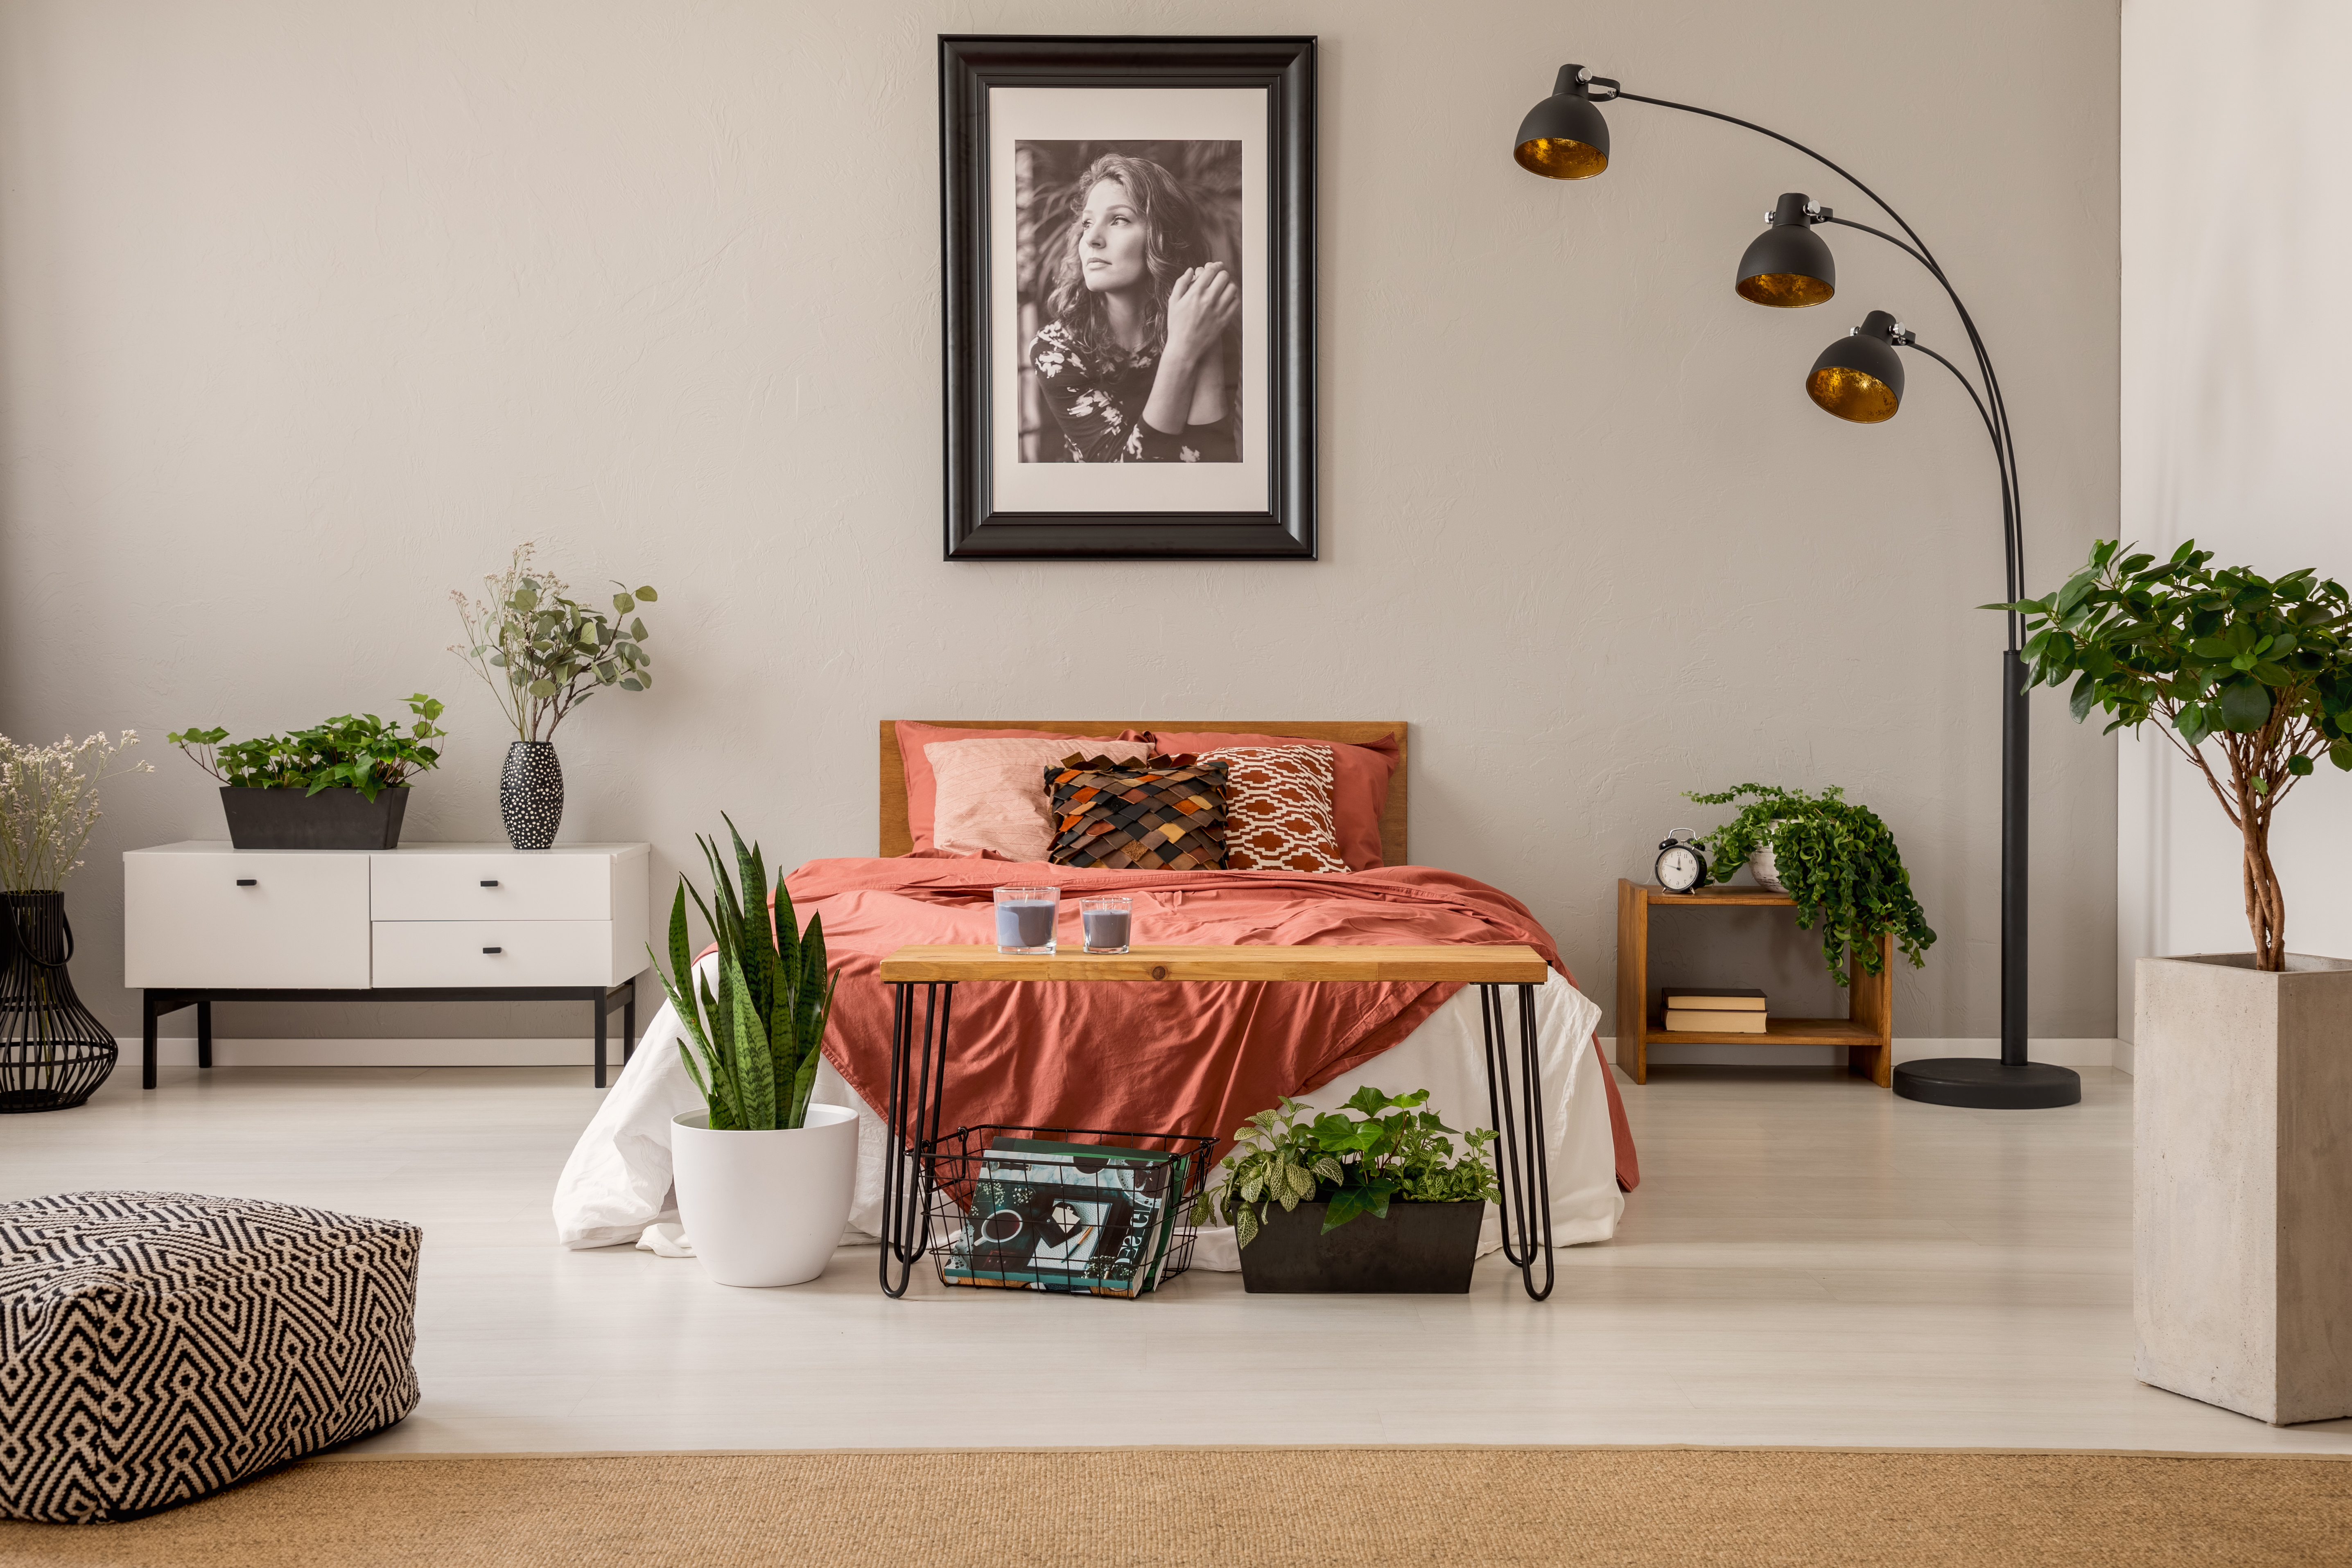 Ein gemütliches Schlafzimmer mit einem Foto einer Frau, das über dem Bett hängt | Quelle: Shutterstock